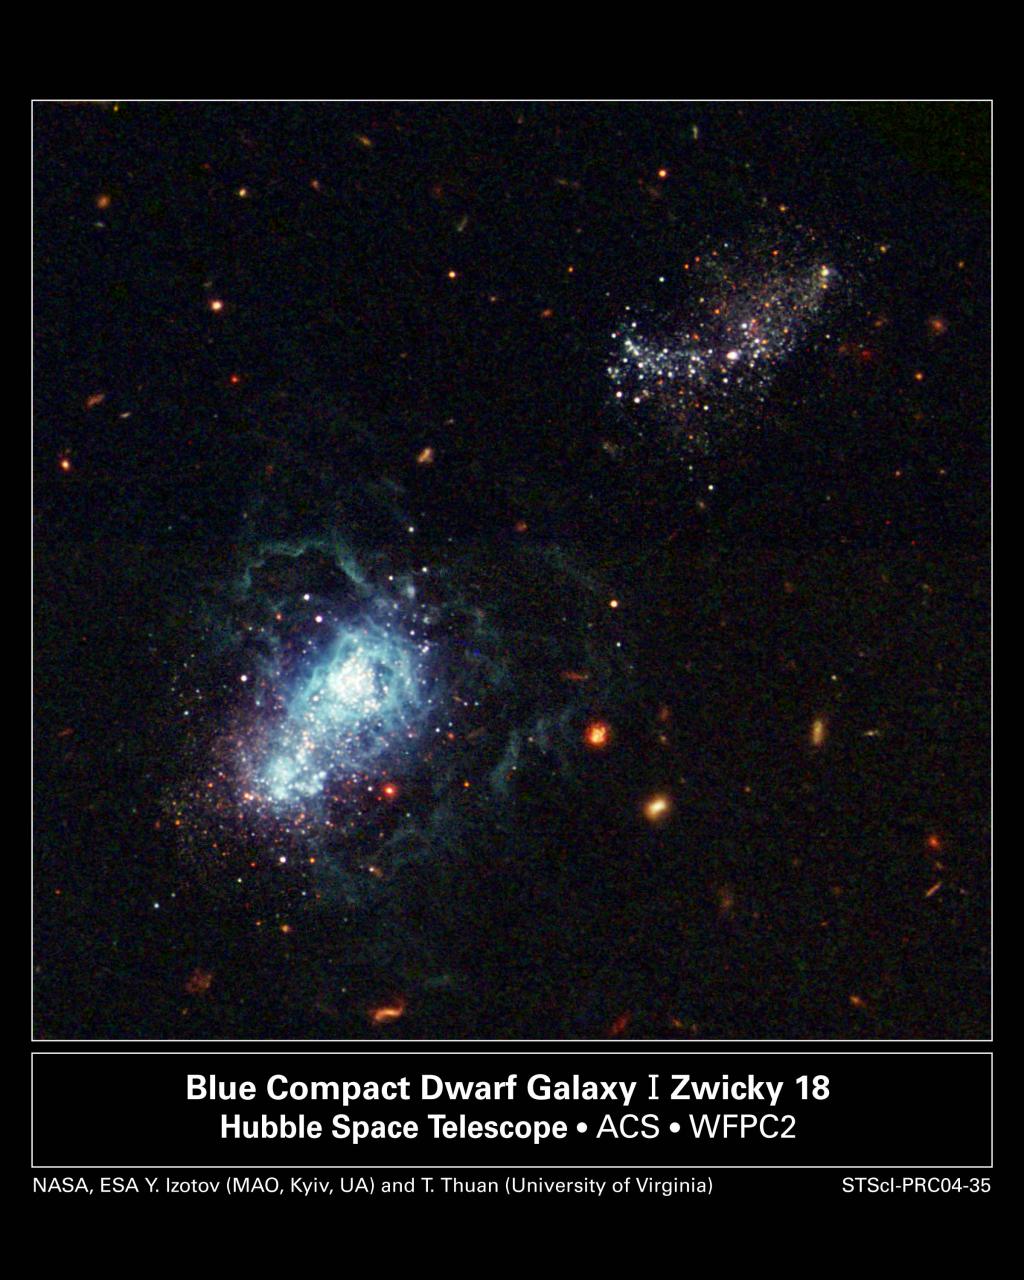 La galaxia IZw18 fotografiada por el telescopio espacial Hubble. Fuente: NASA, ESA, Y. Izotov y T. Thuan. 